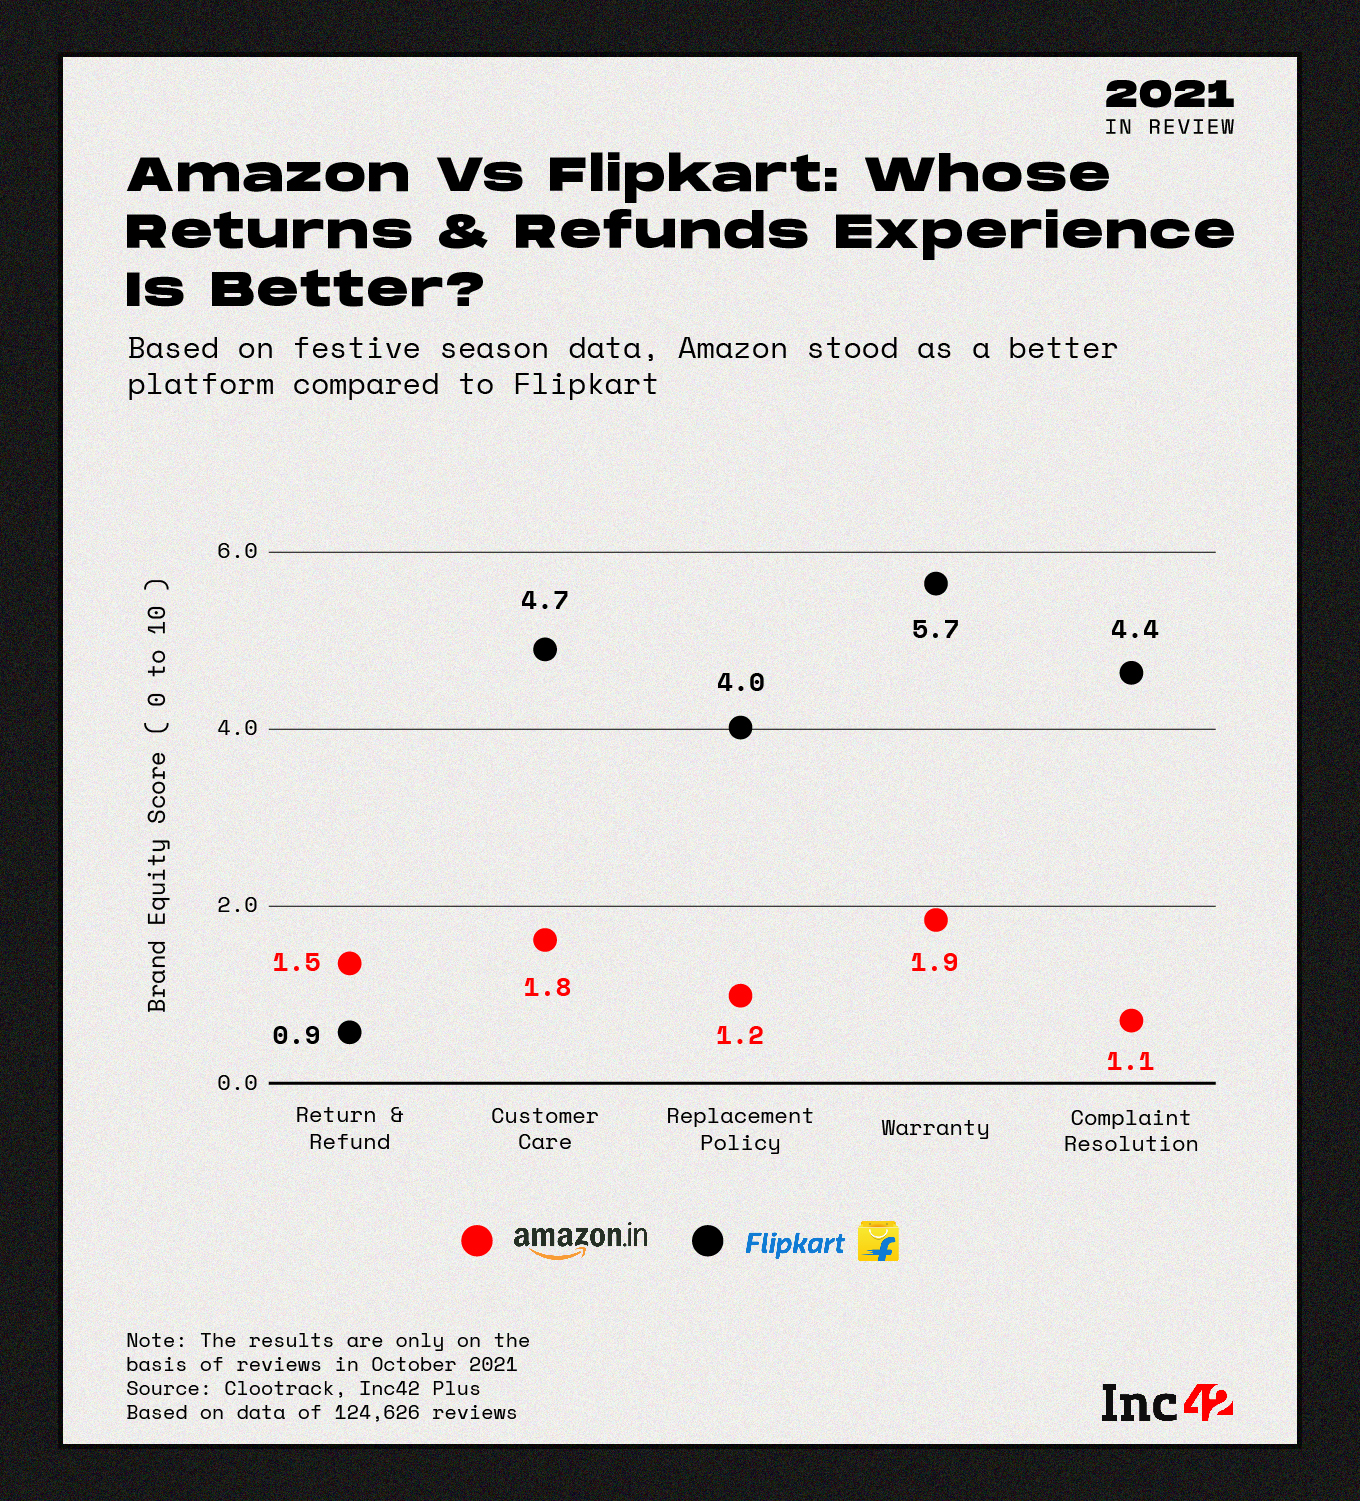 Amazon vs Flipkart: Return & Refund